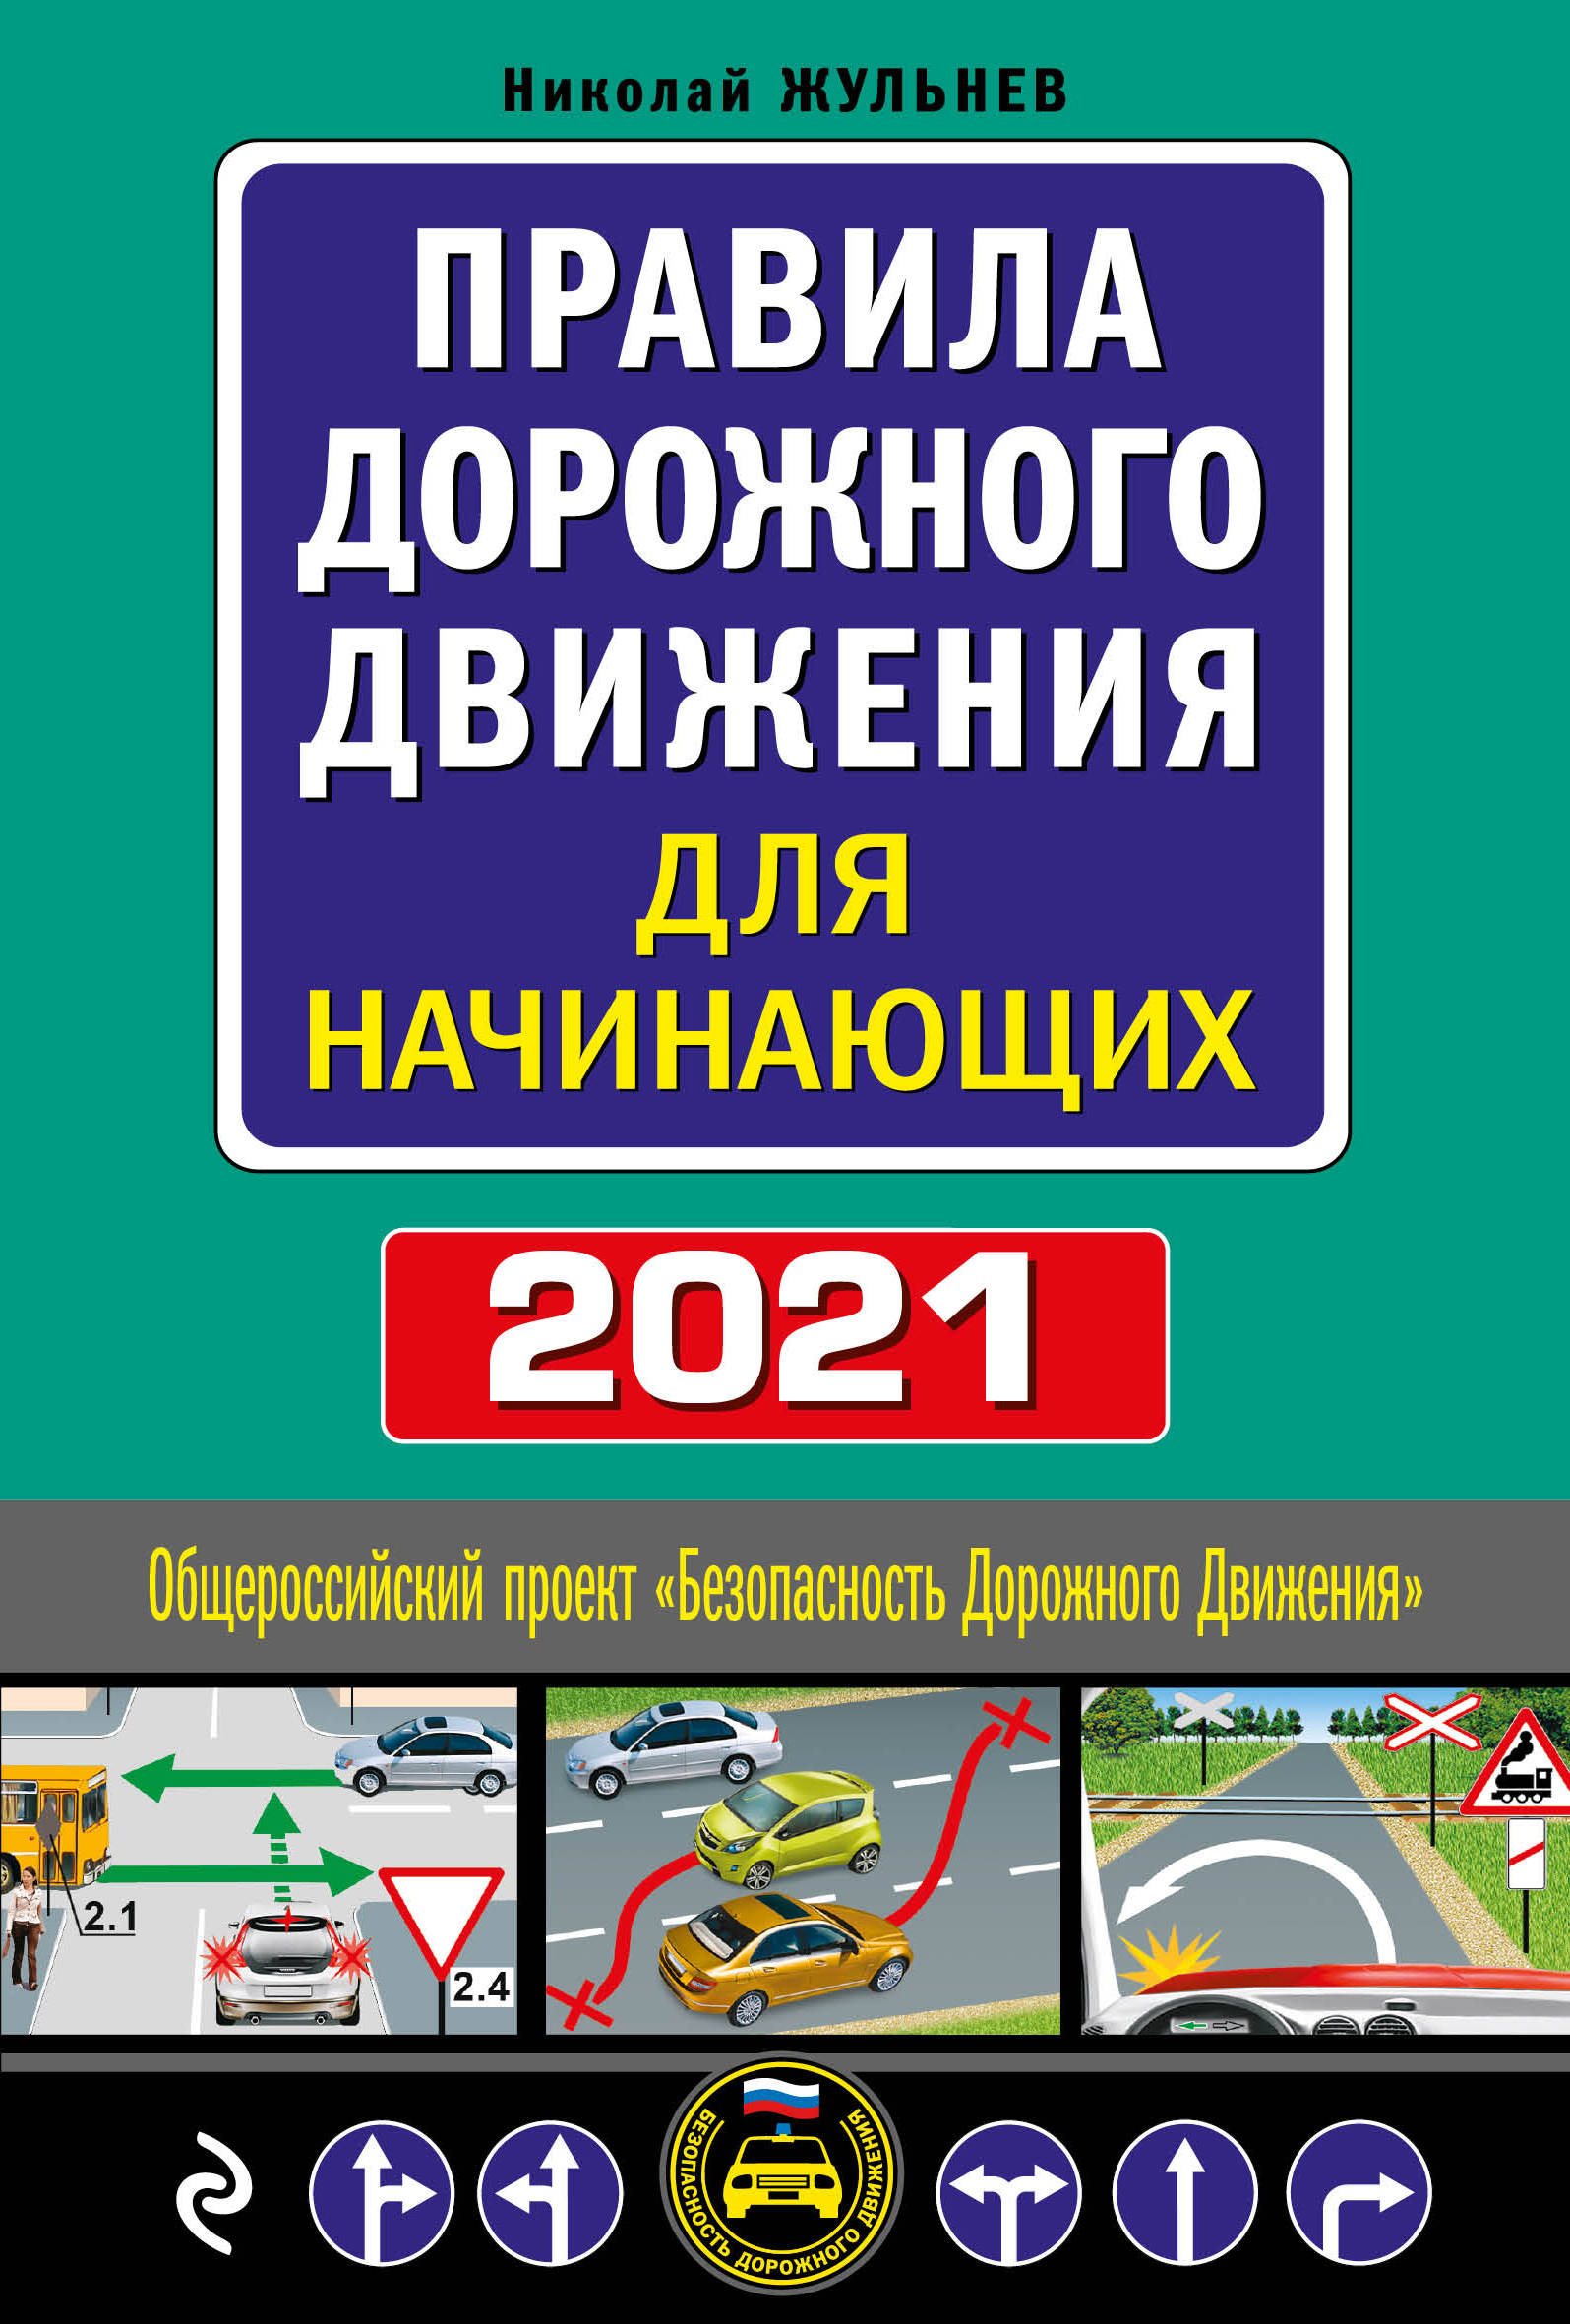  ..       .  2021  